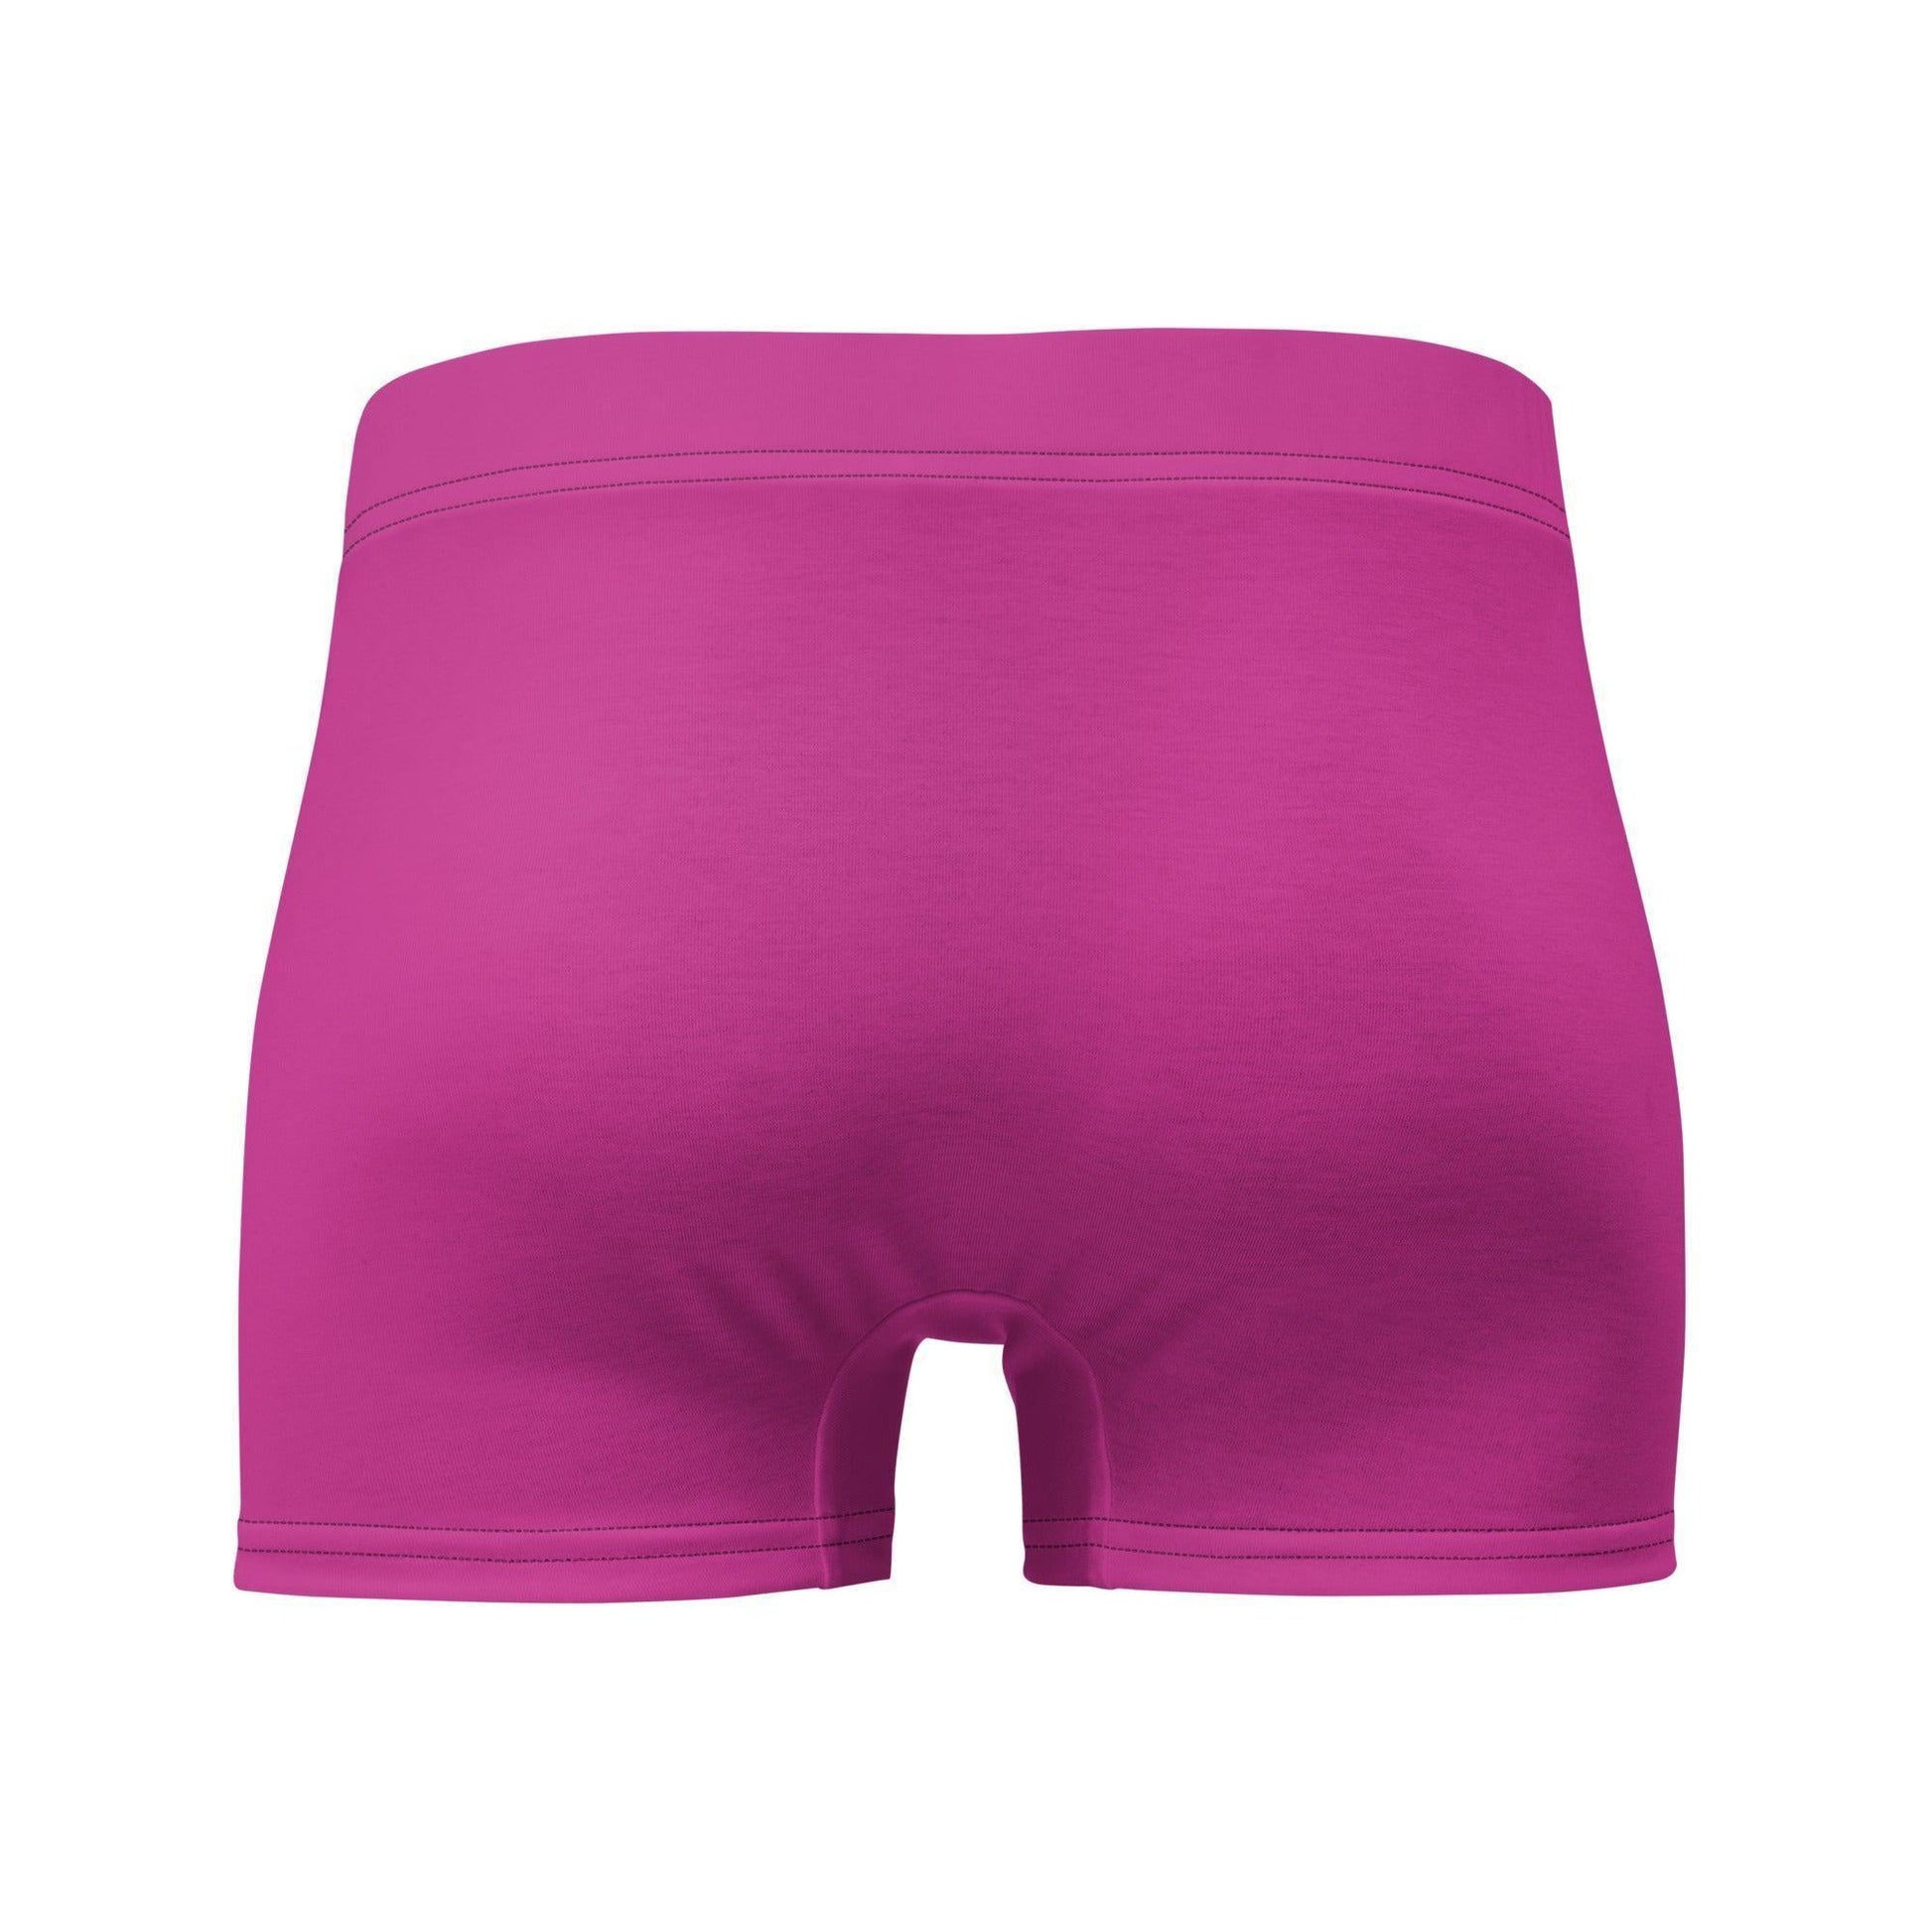 Mittlere Rot-Violett Royal Underwear Boxershorts -- Mittlere Rot-Violett Royal Underwear Boxershorts - undefined Boxershorts | JLR Design